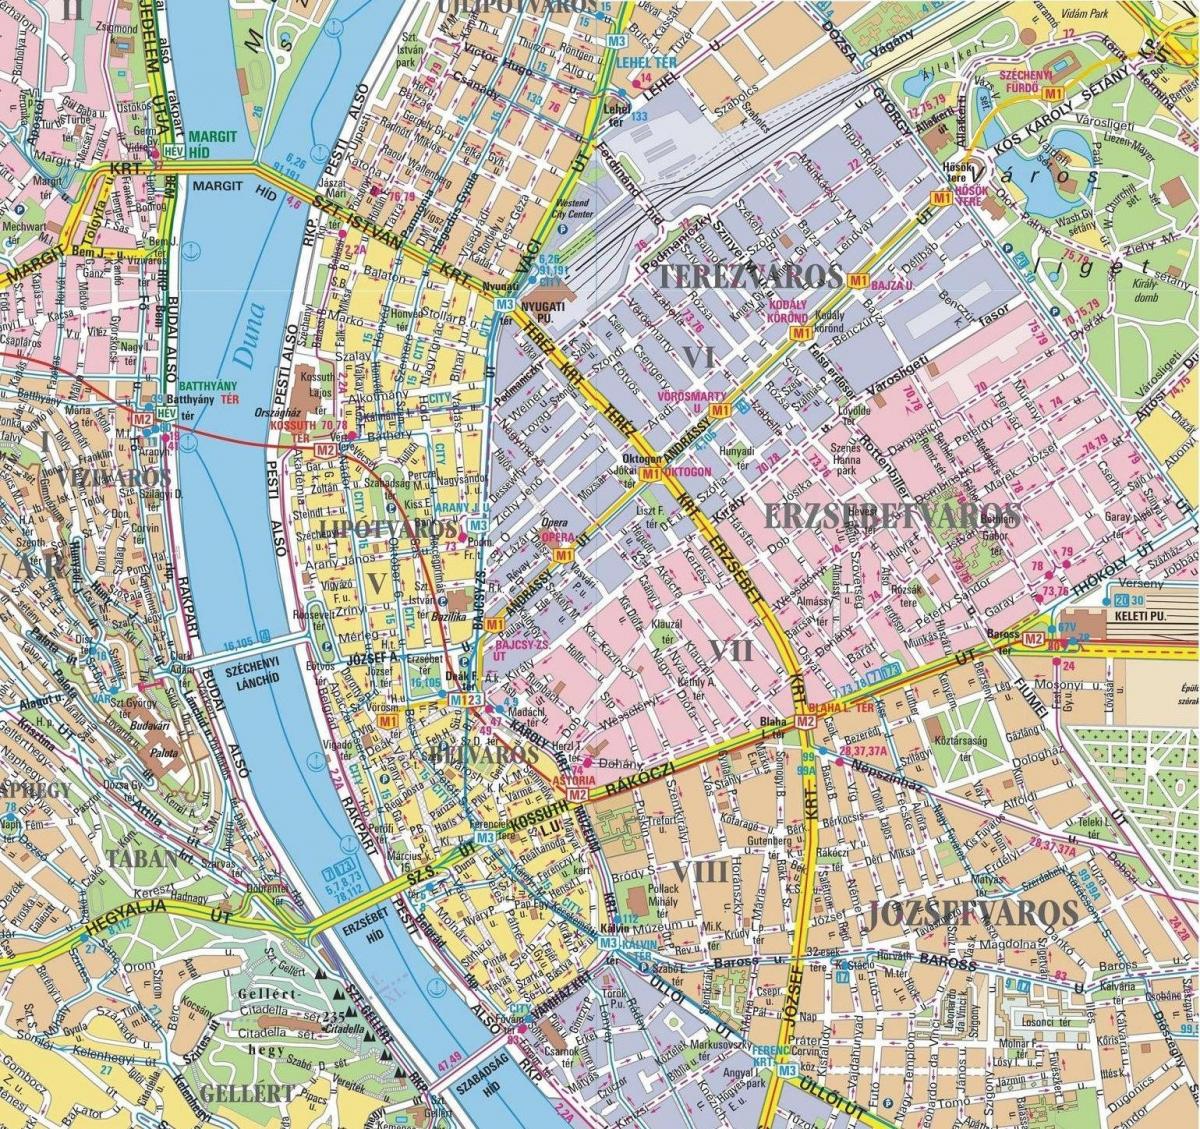 Karte der Bezirke in budapest